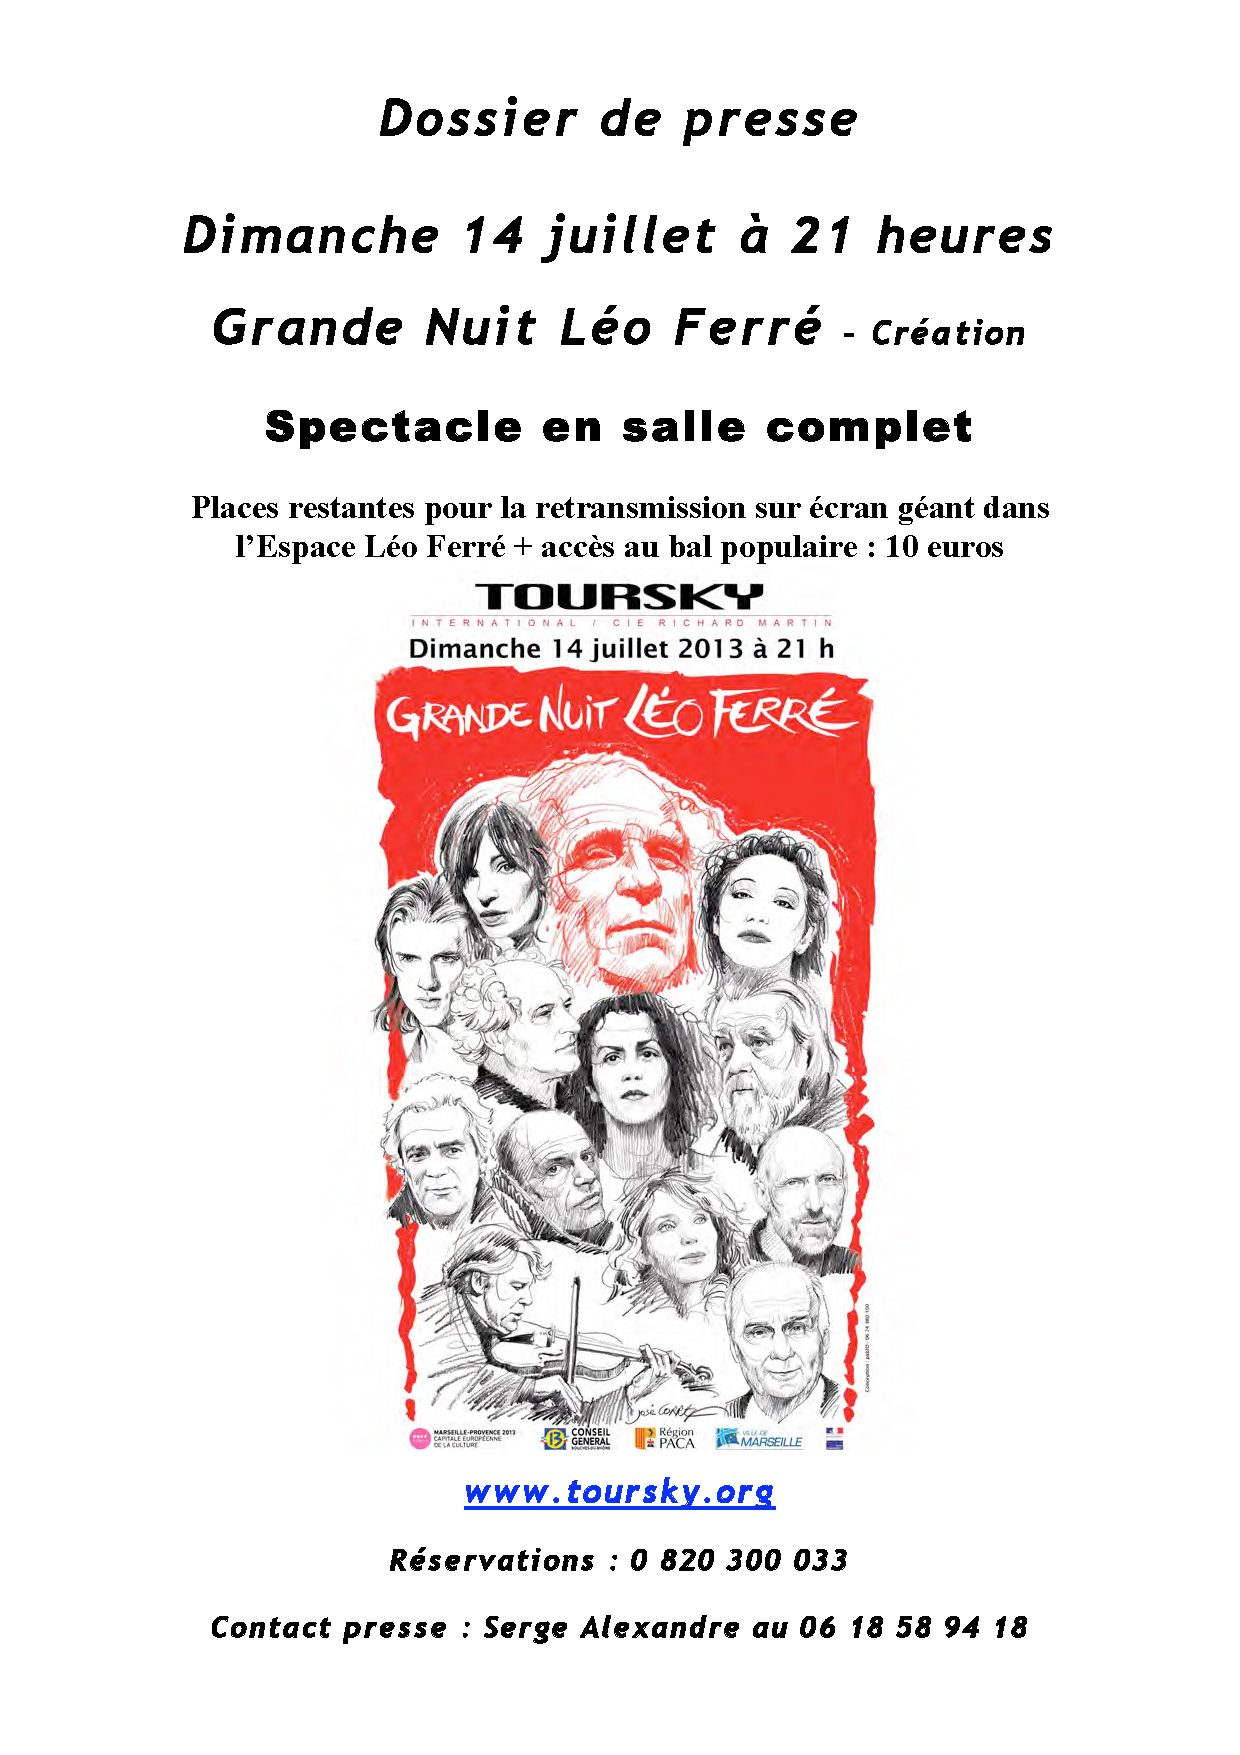 Le 14/07/2013 Grande Nuit Léo Ferré au Toursky 